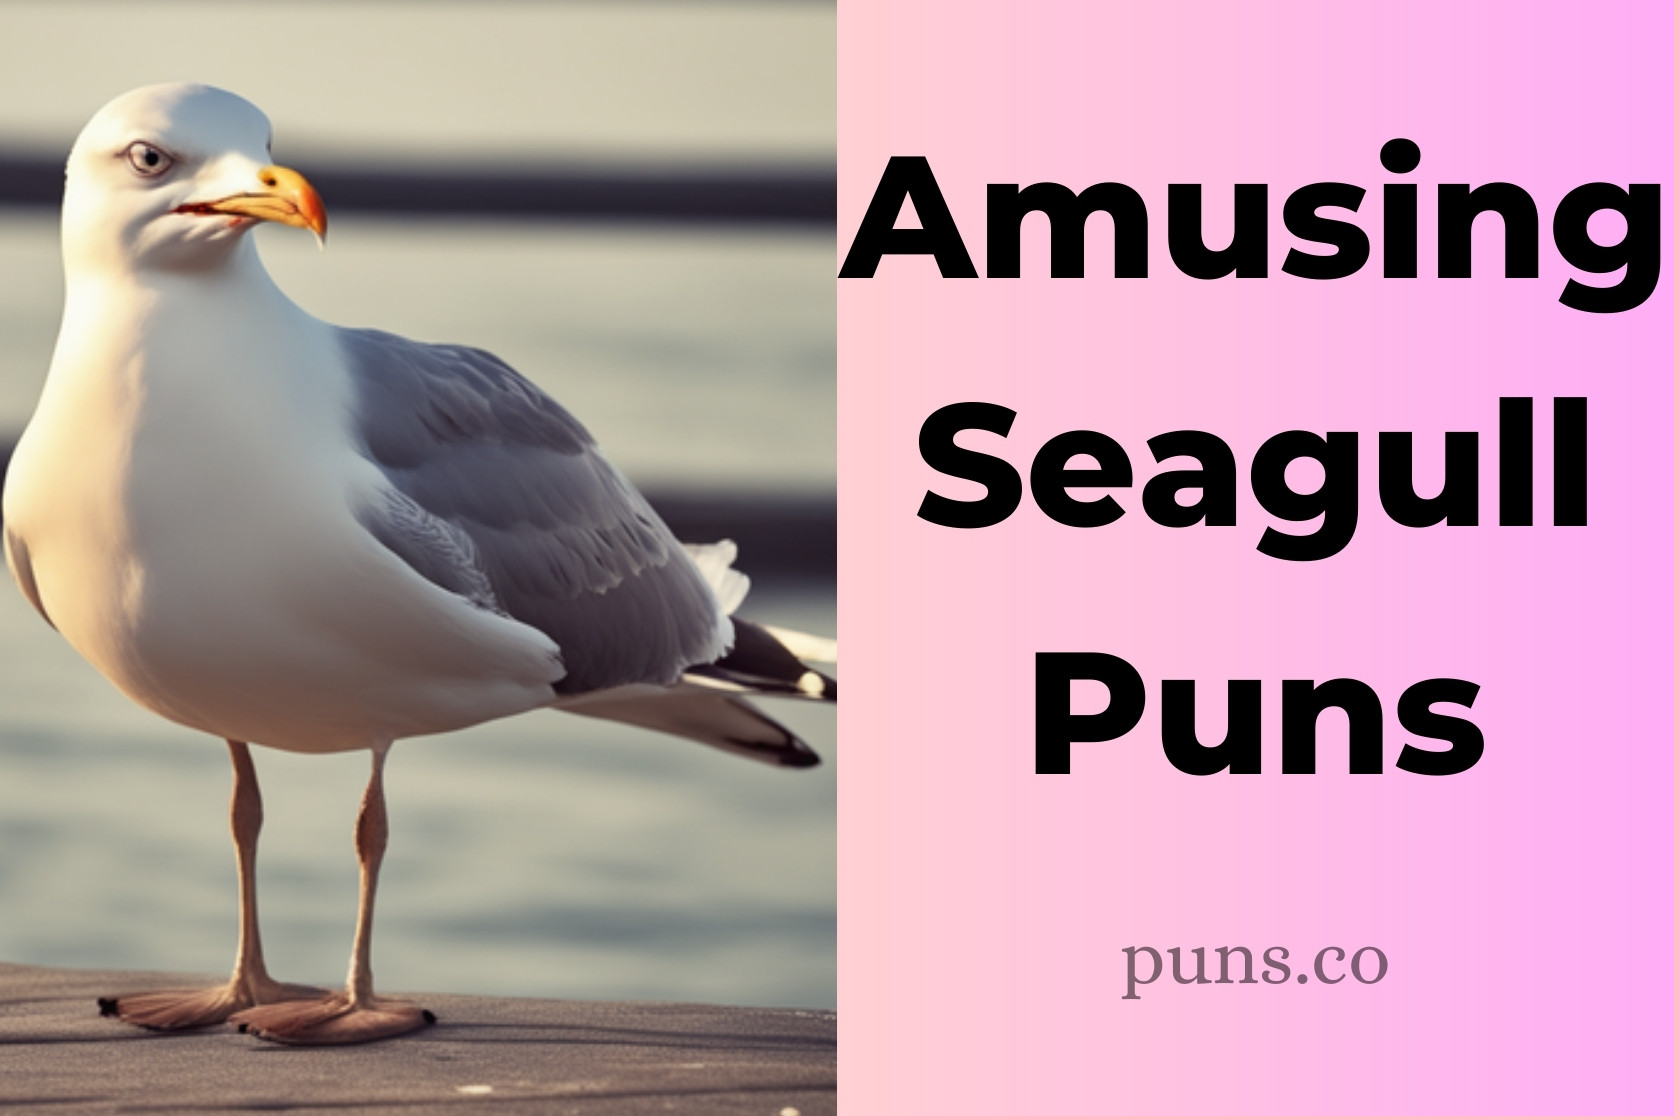 Seagull Puns